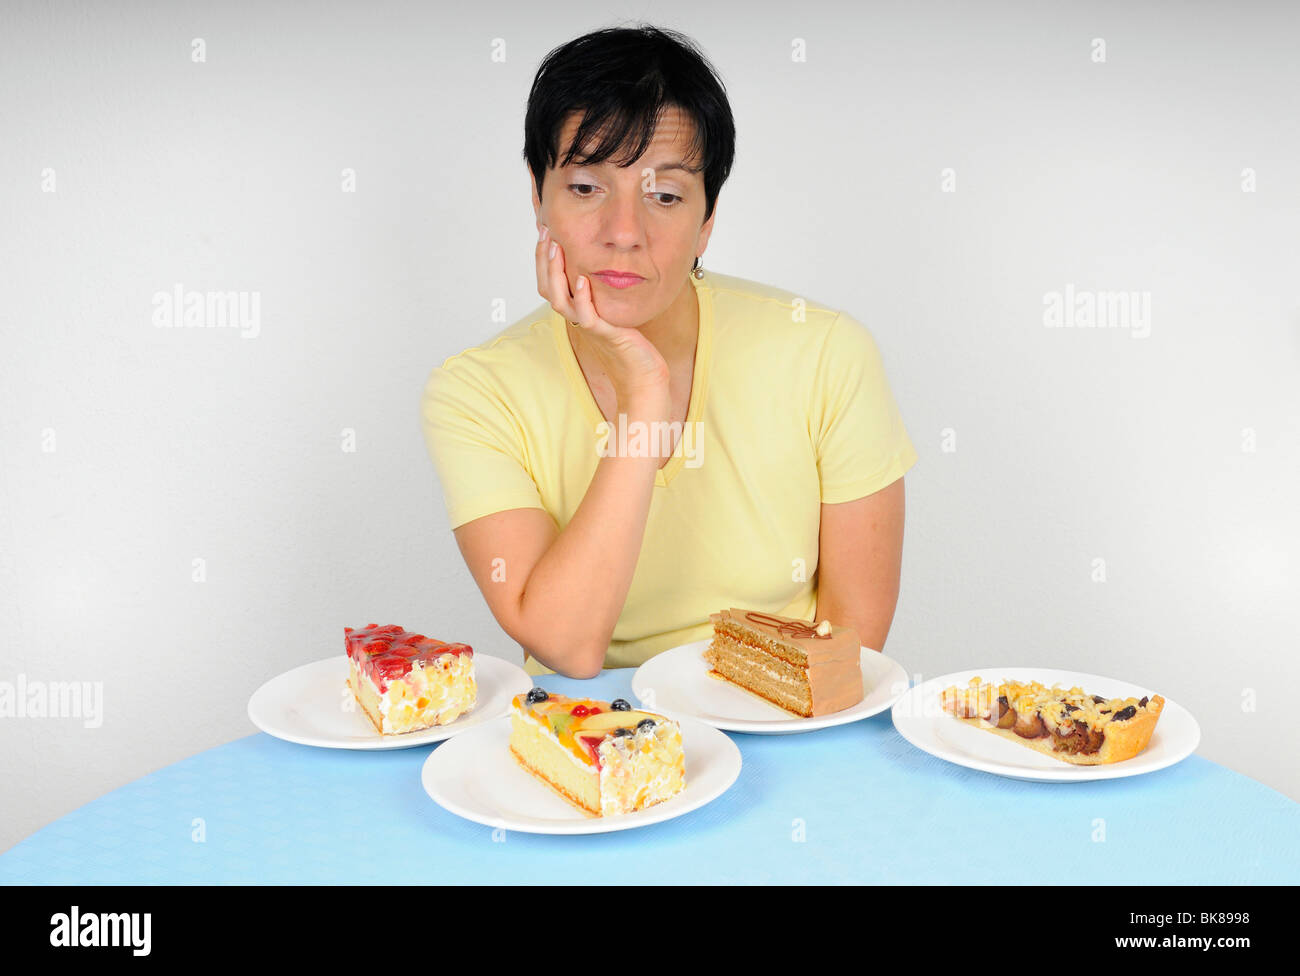 После 40 почему полнеют. Потеря аппетита. Набор веса при климаксе. Ожирение при климаксе у женщин. Потеря аппетита причины у женщин.